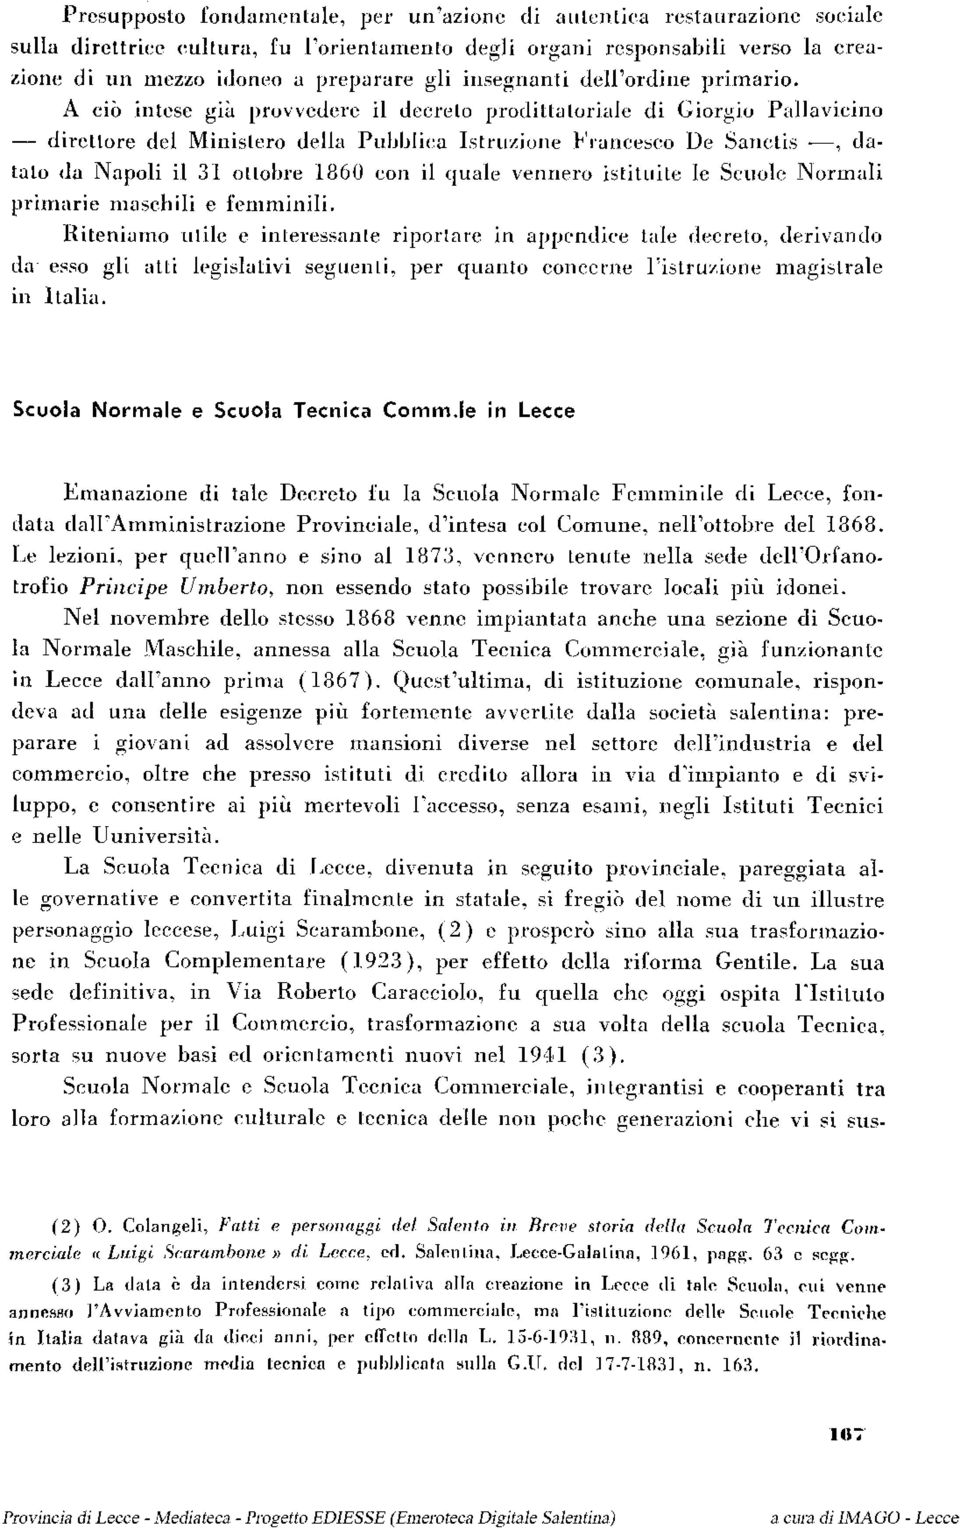 A ciò intese già provvedere il decreto prodittatoriale di Giorgio Pallavicino direttore del Ministero della Pubblica Istruzione Francesco De Sanctis, datato da Napoli il 31 ottobre 1860 con il quale